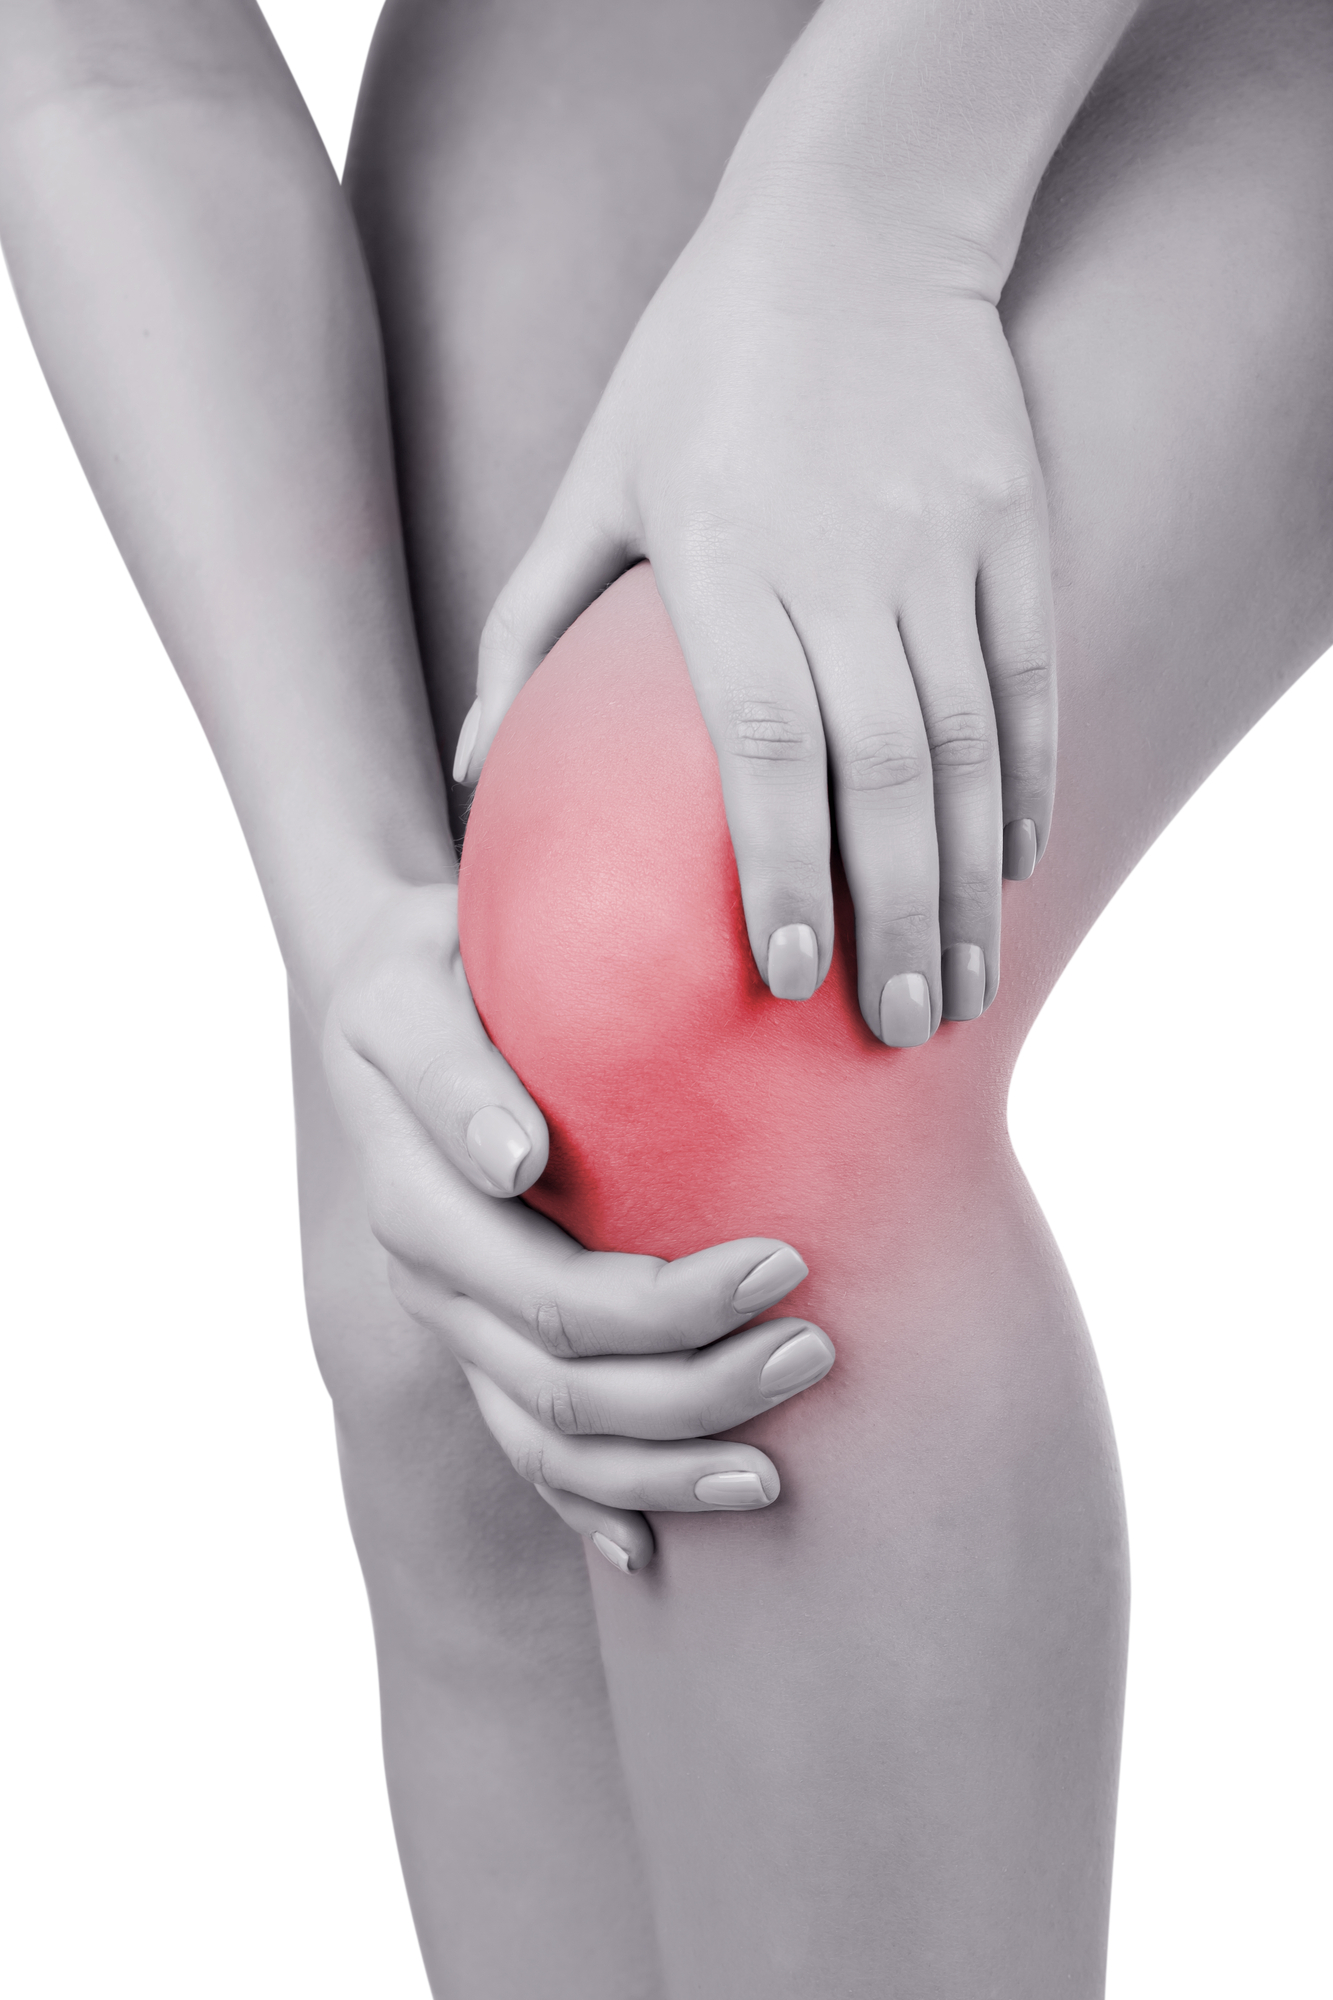 Acute pain in knee